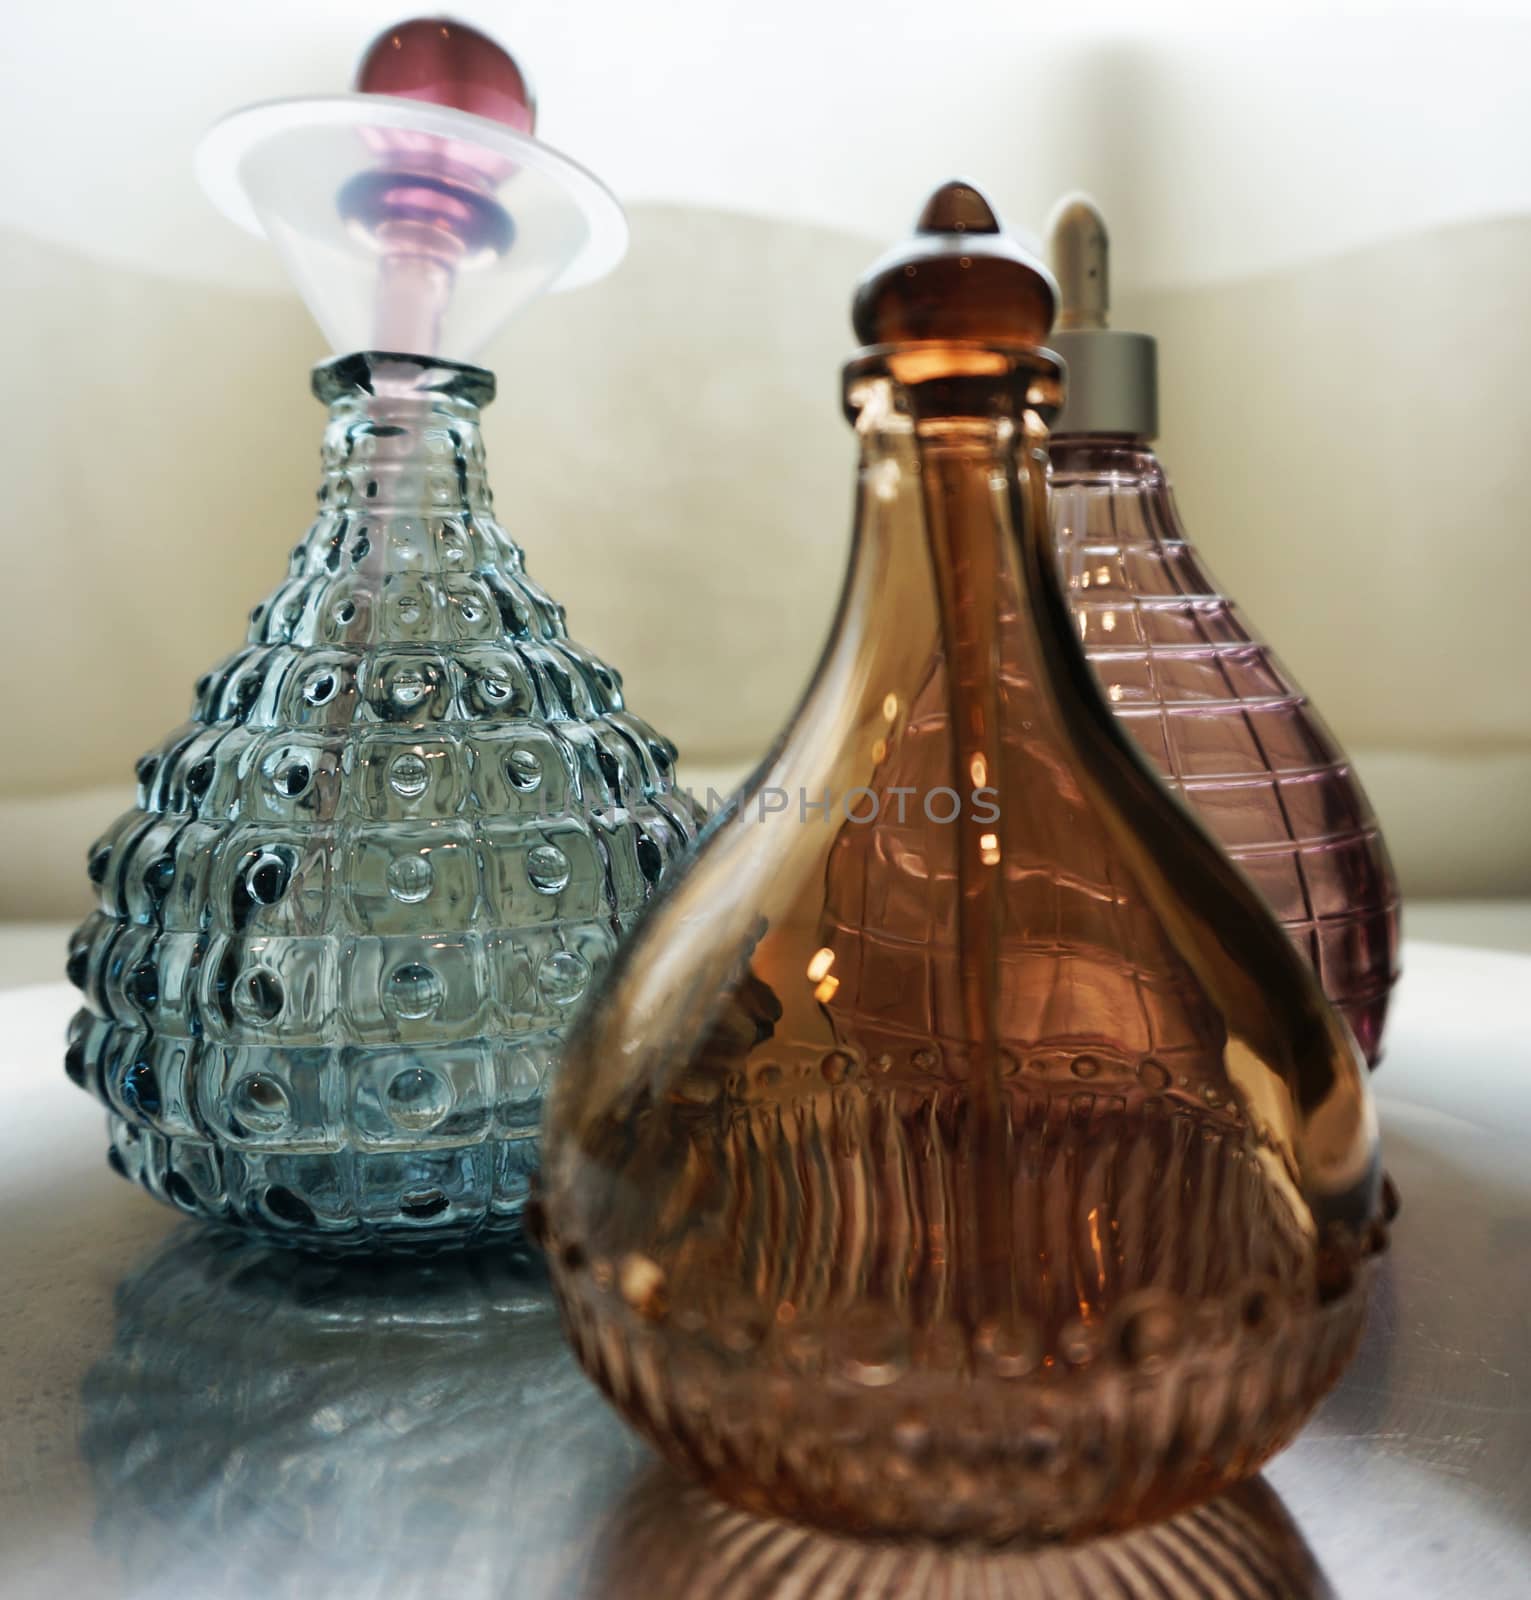 Perfume bottles by ninun